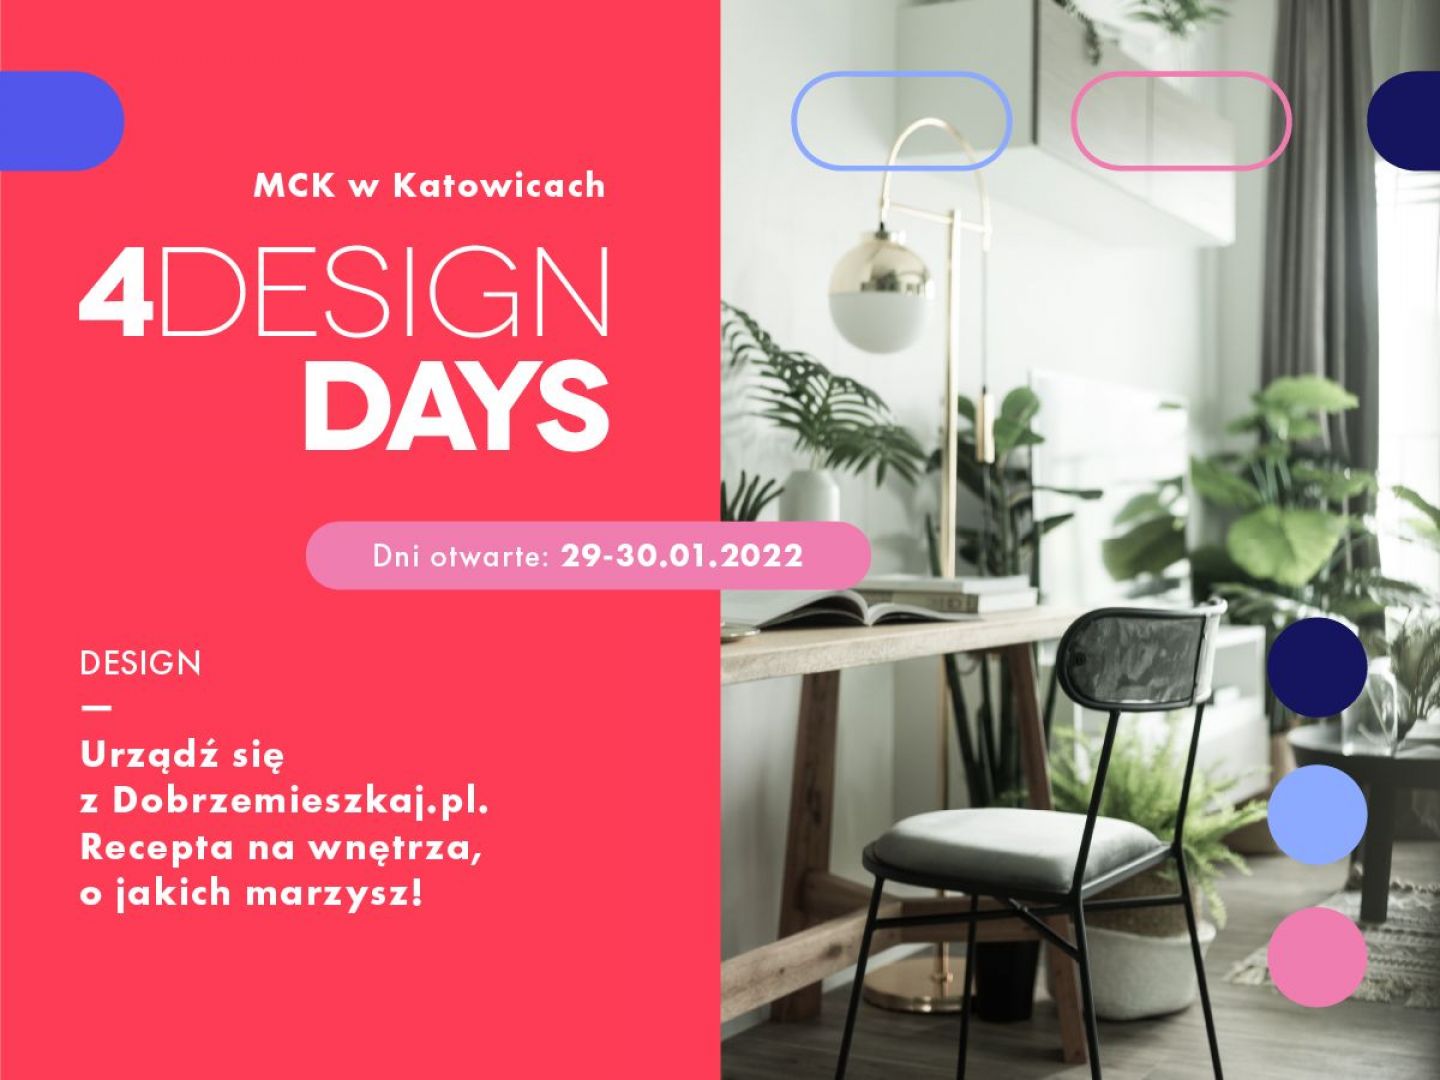 Urządź się z Dobrzemieszkaj.pl. Recepta na wnętrza, o jakich marzysz! Tylko na 4 Design Days 2022!